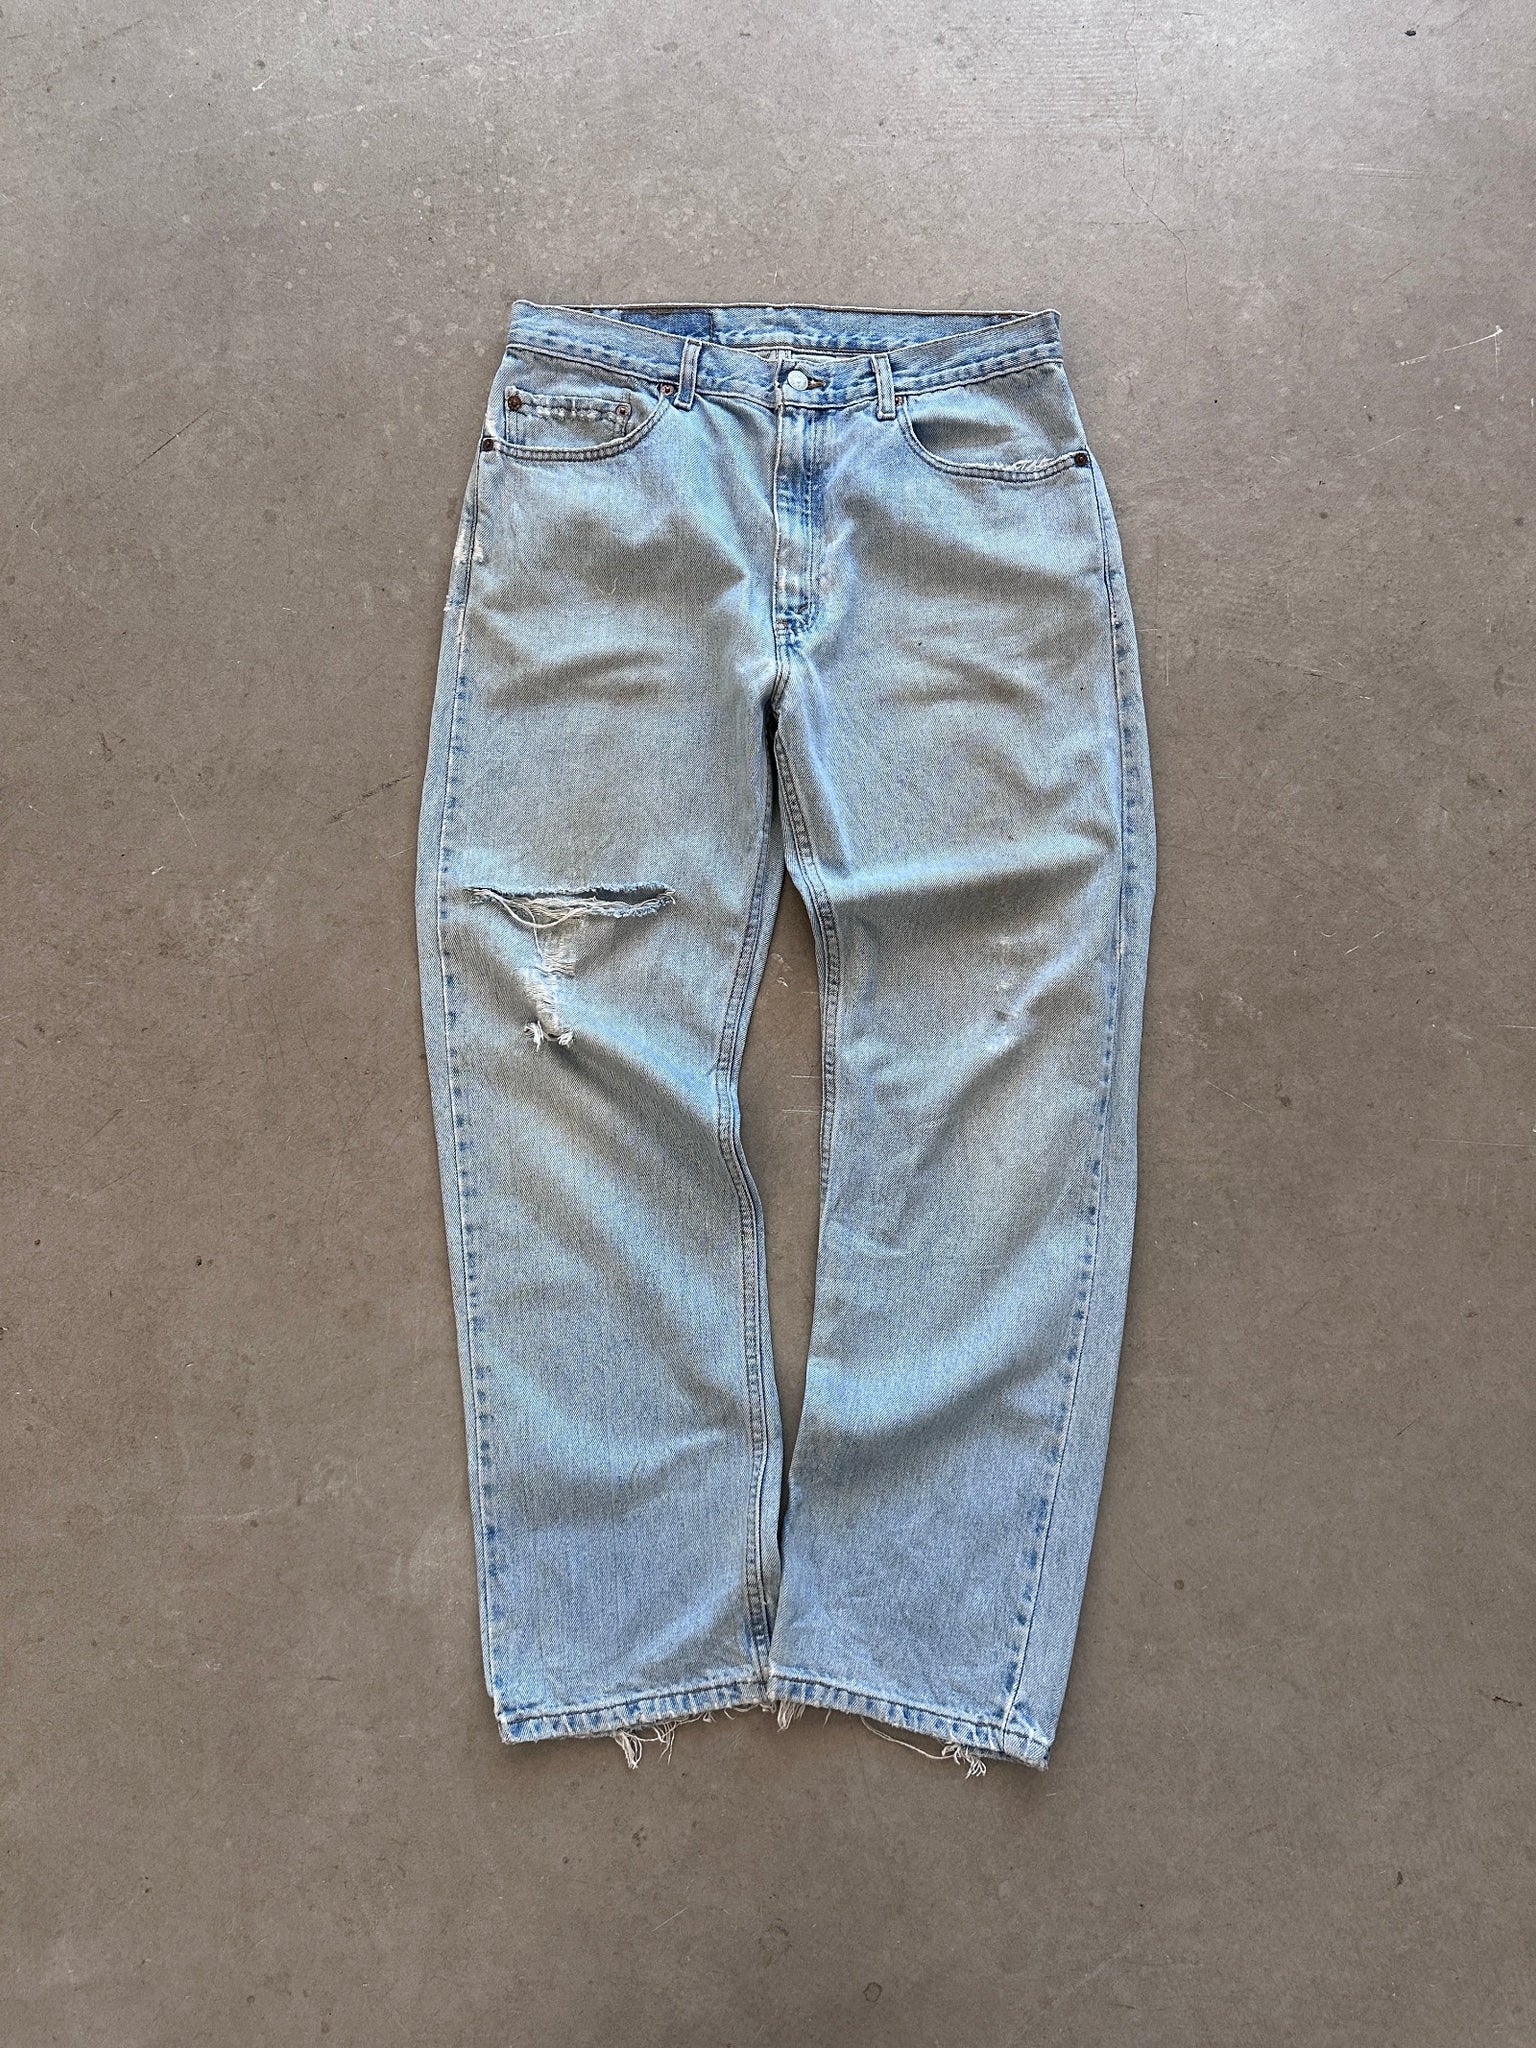 2000 Levi's 505 Jeans - 34 x 30